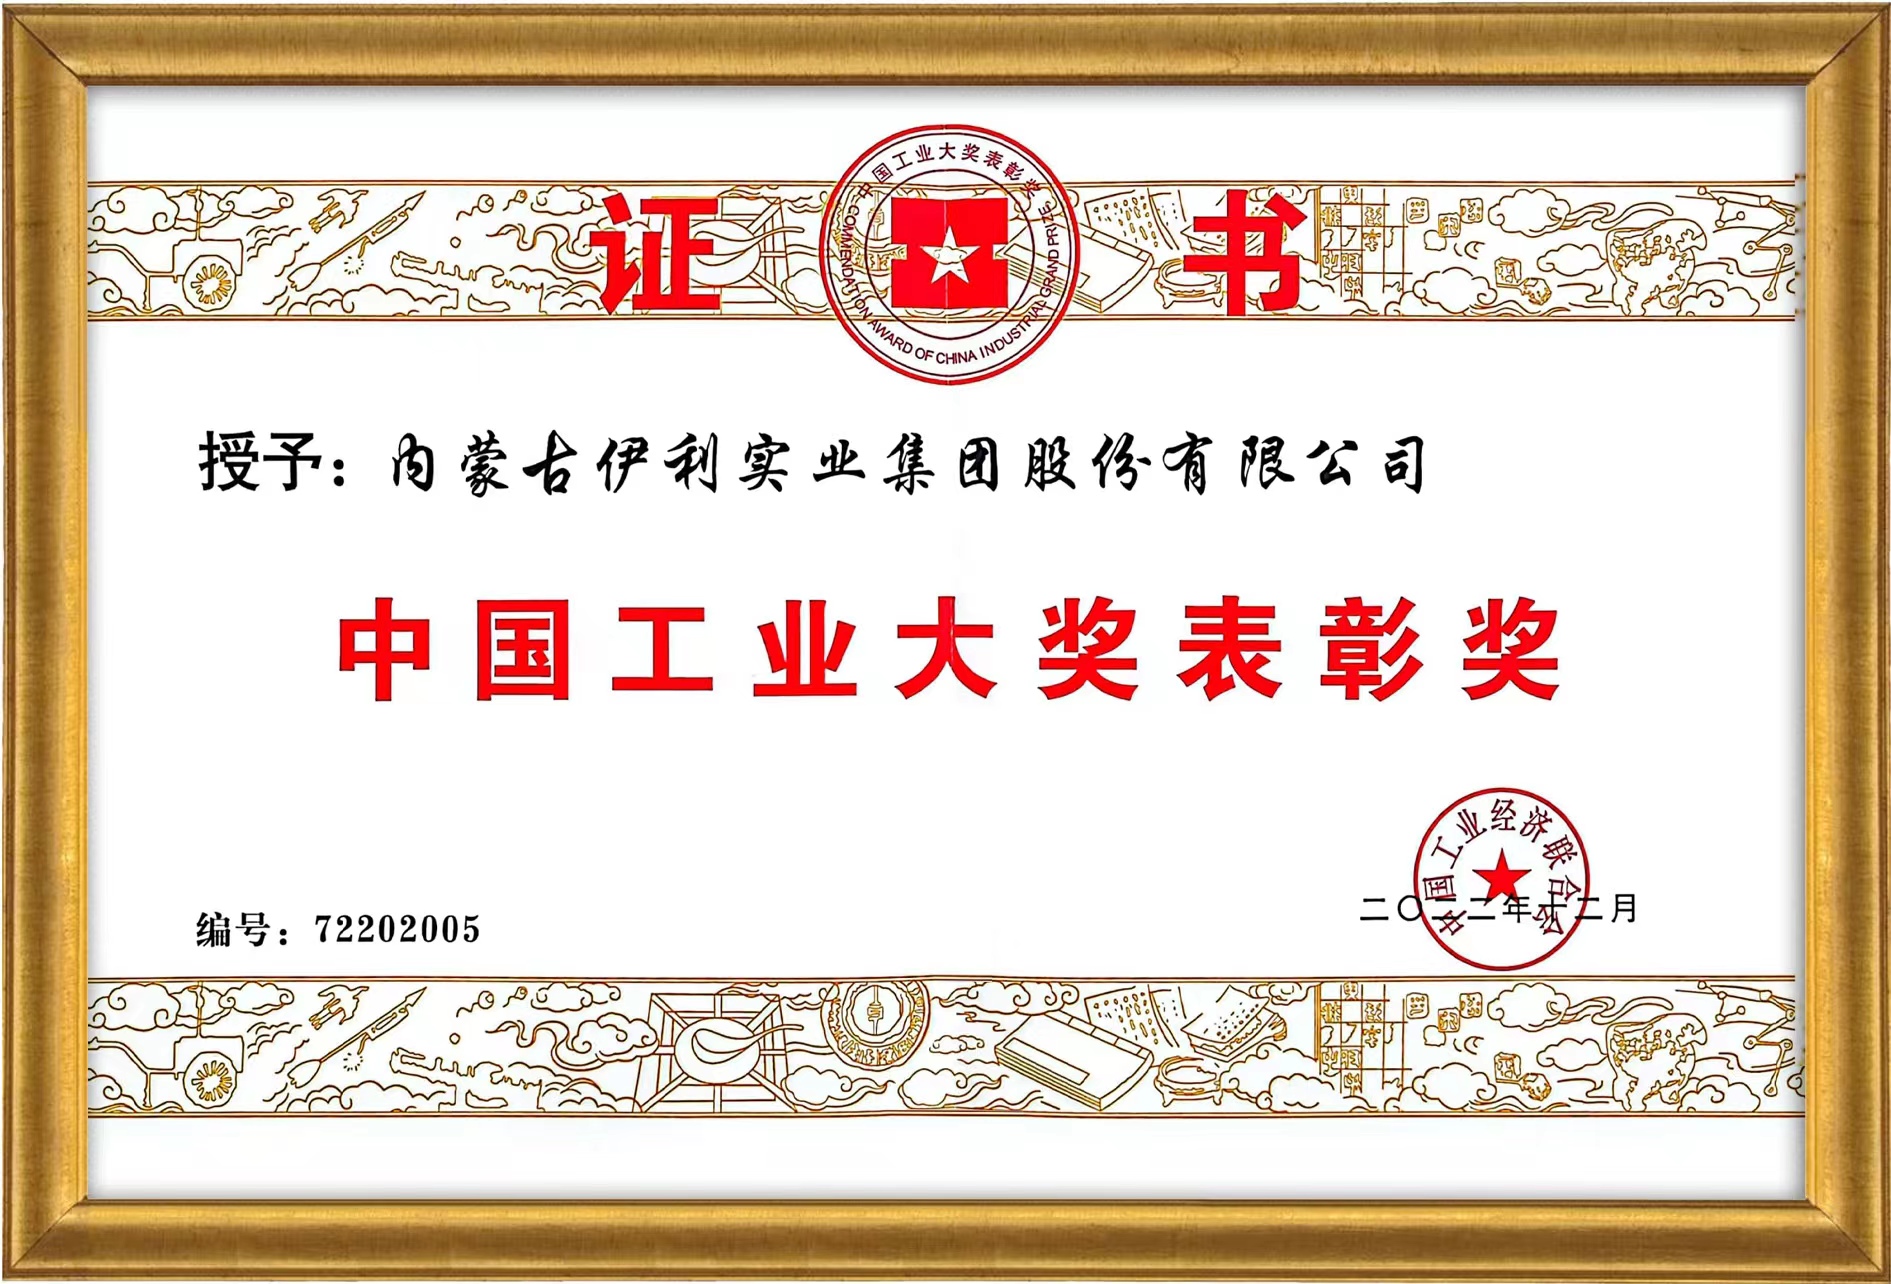 再获国家表彰，伊利获颁中国工业大奖表彰奖